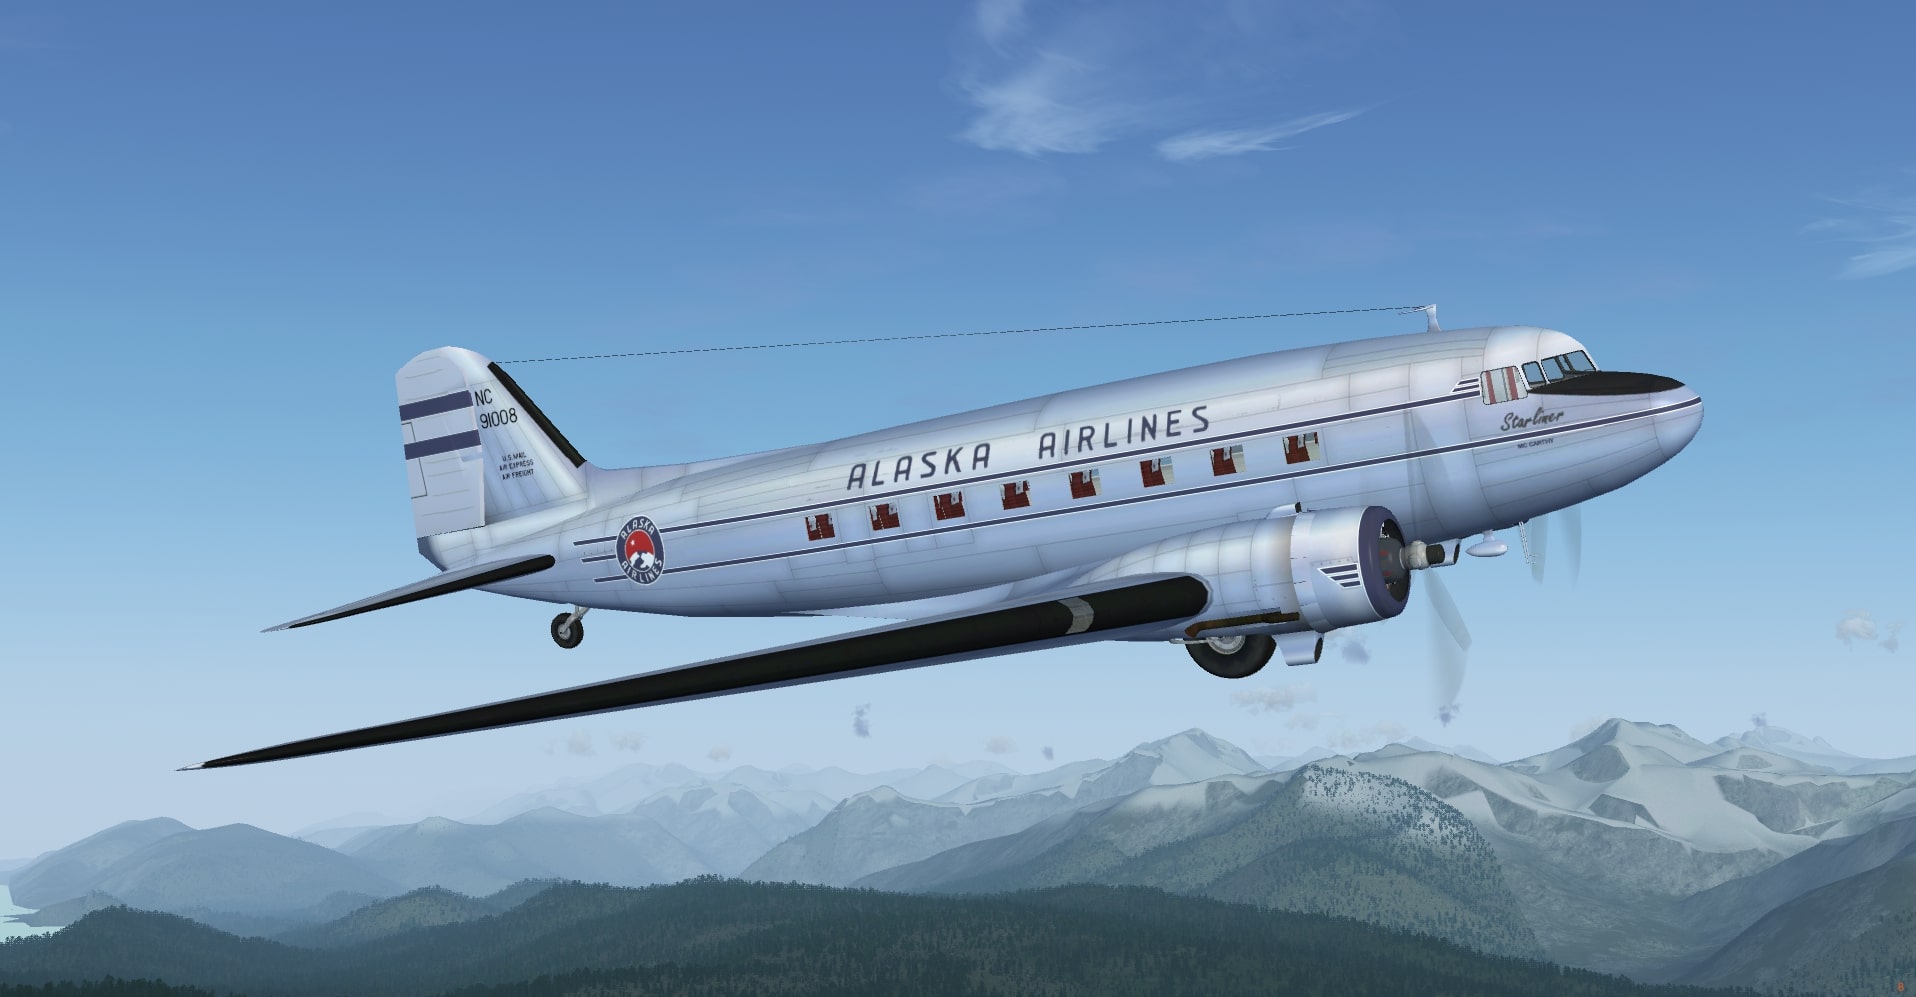 Alaska Airlines NC91008